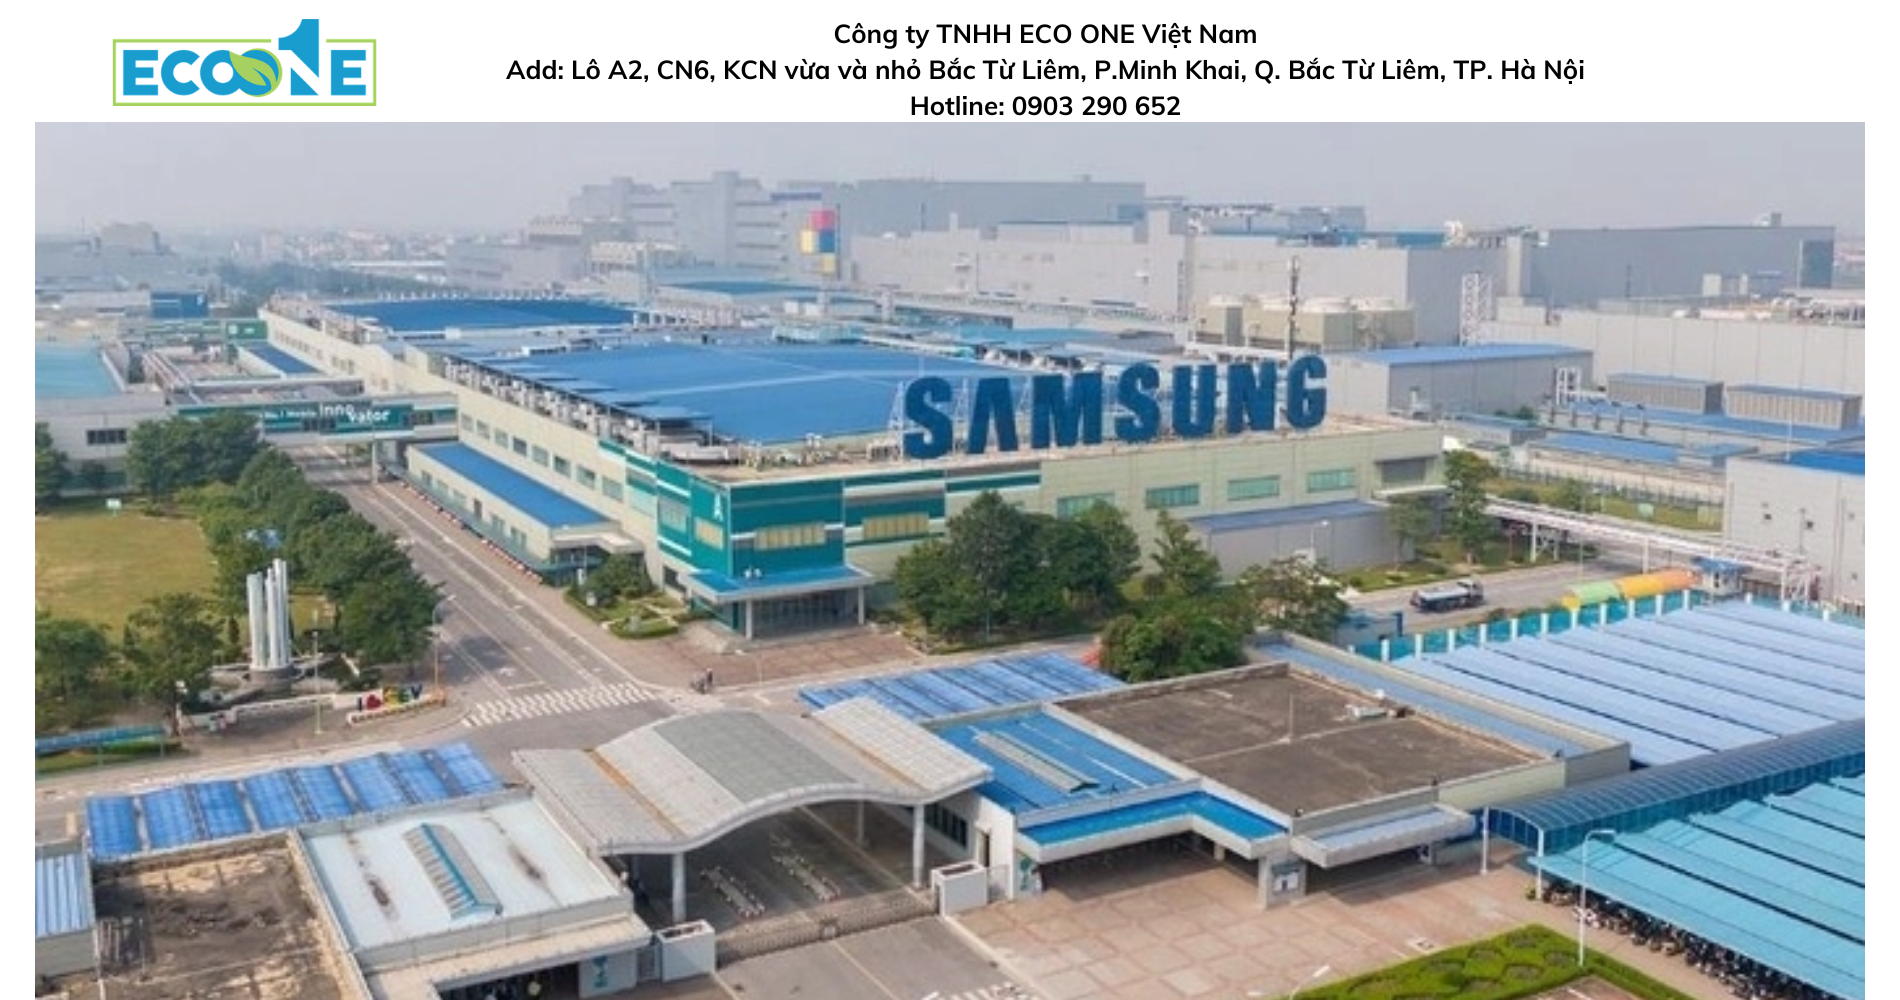 Công ty Samsung Electronics Vietnam - Đơn vị hàng đầu đã lựa chọn sử dụng các dịch vụ hóa chất do Eco One cung cấp